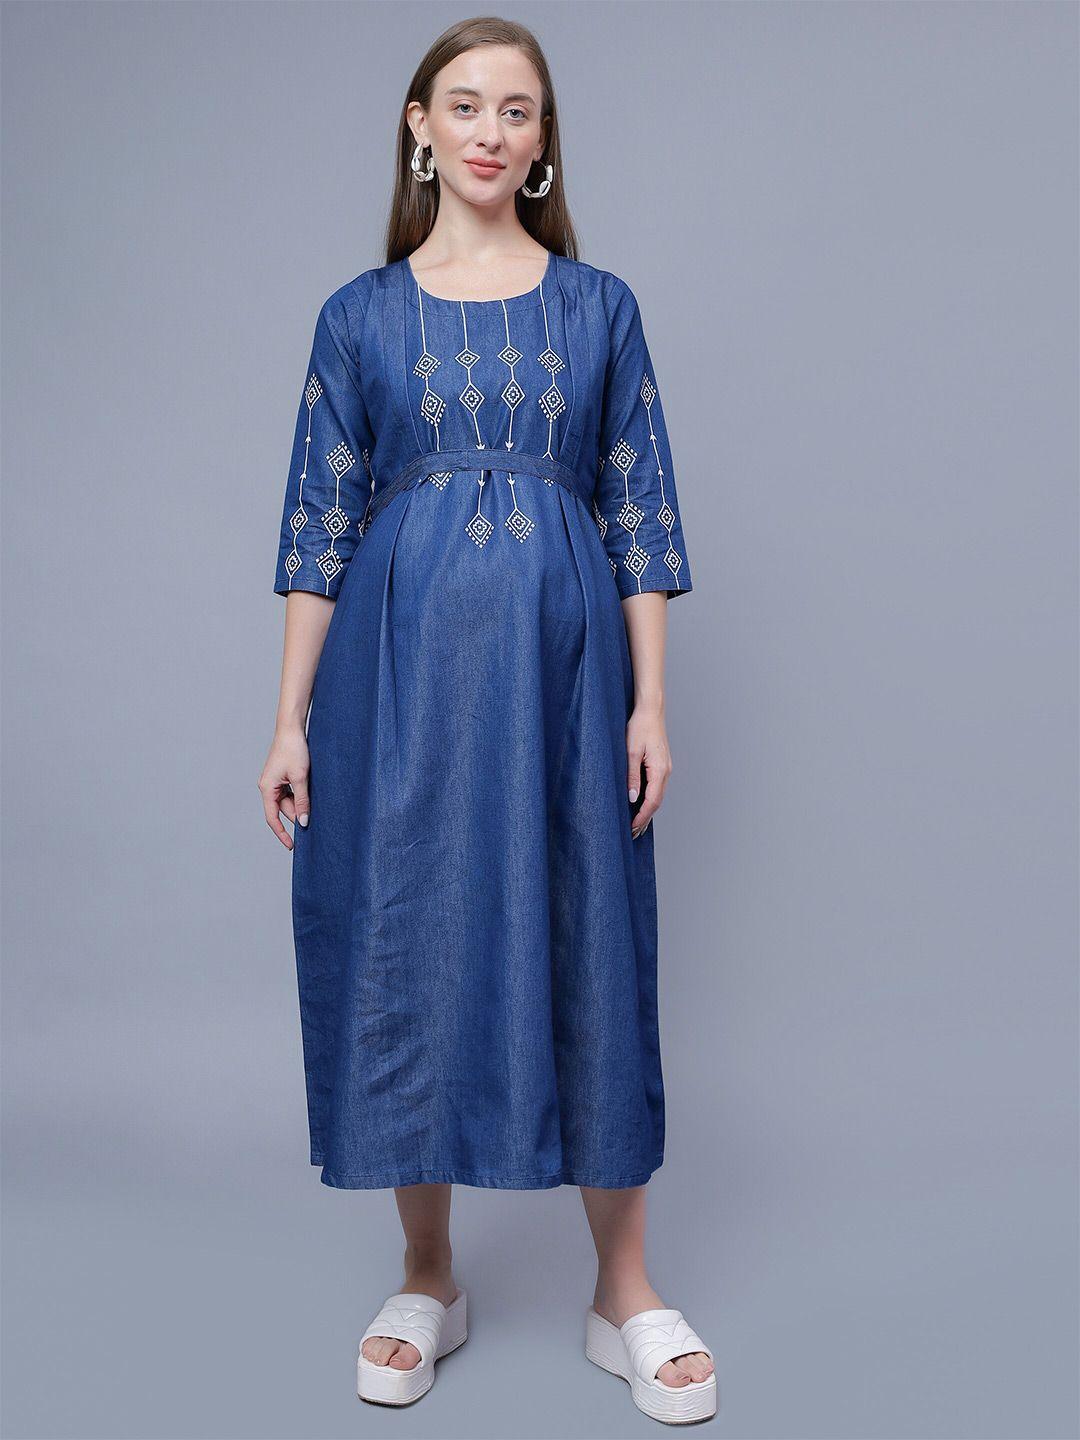 nightspree ethnic motifs print denim maternity fit & flare midi cotton dress